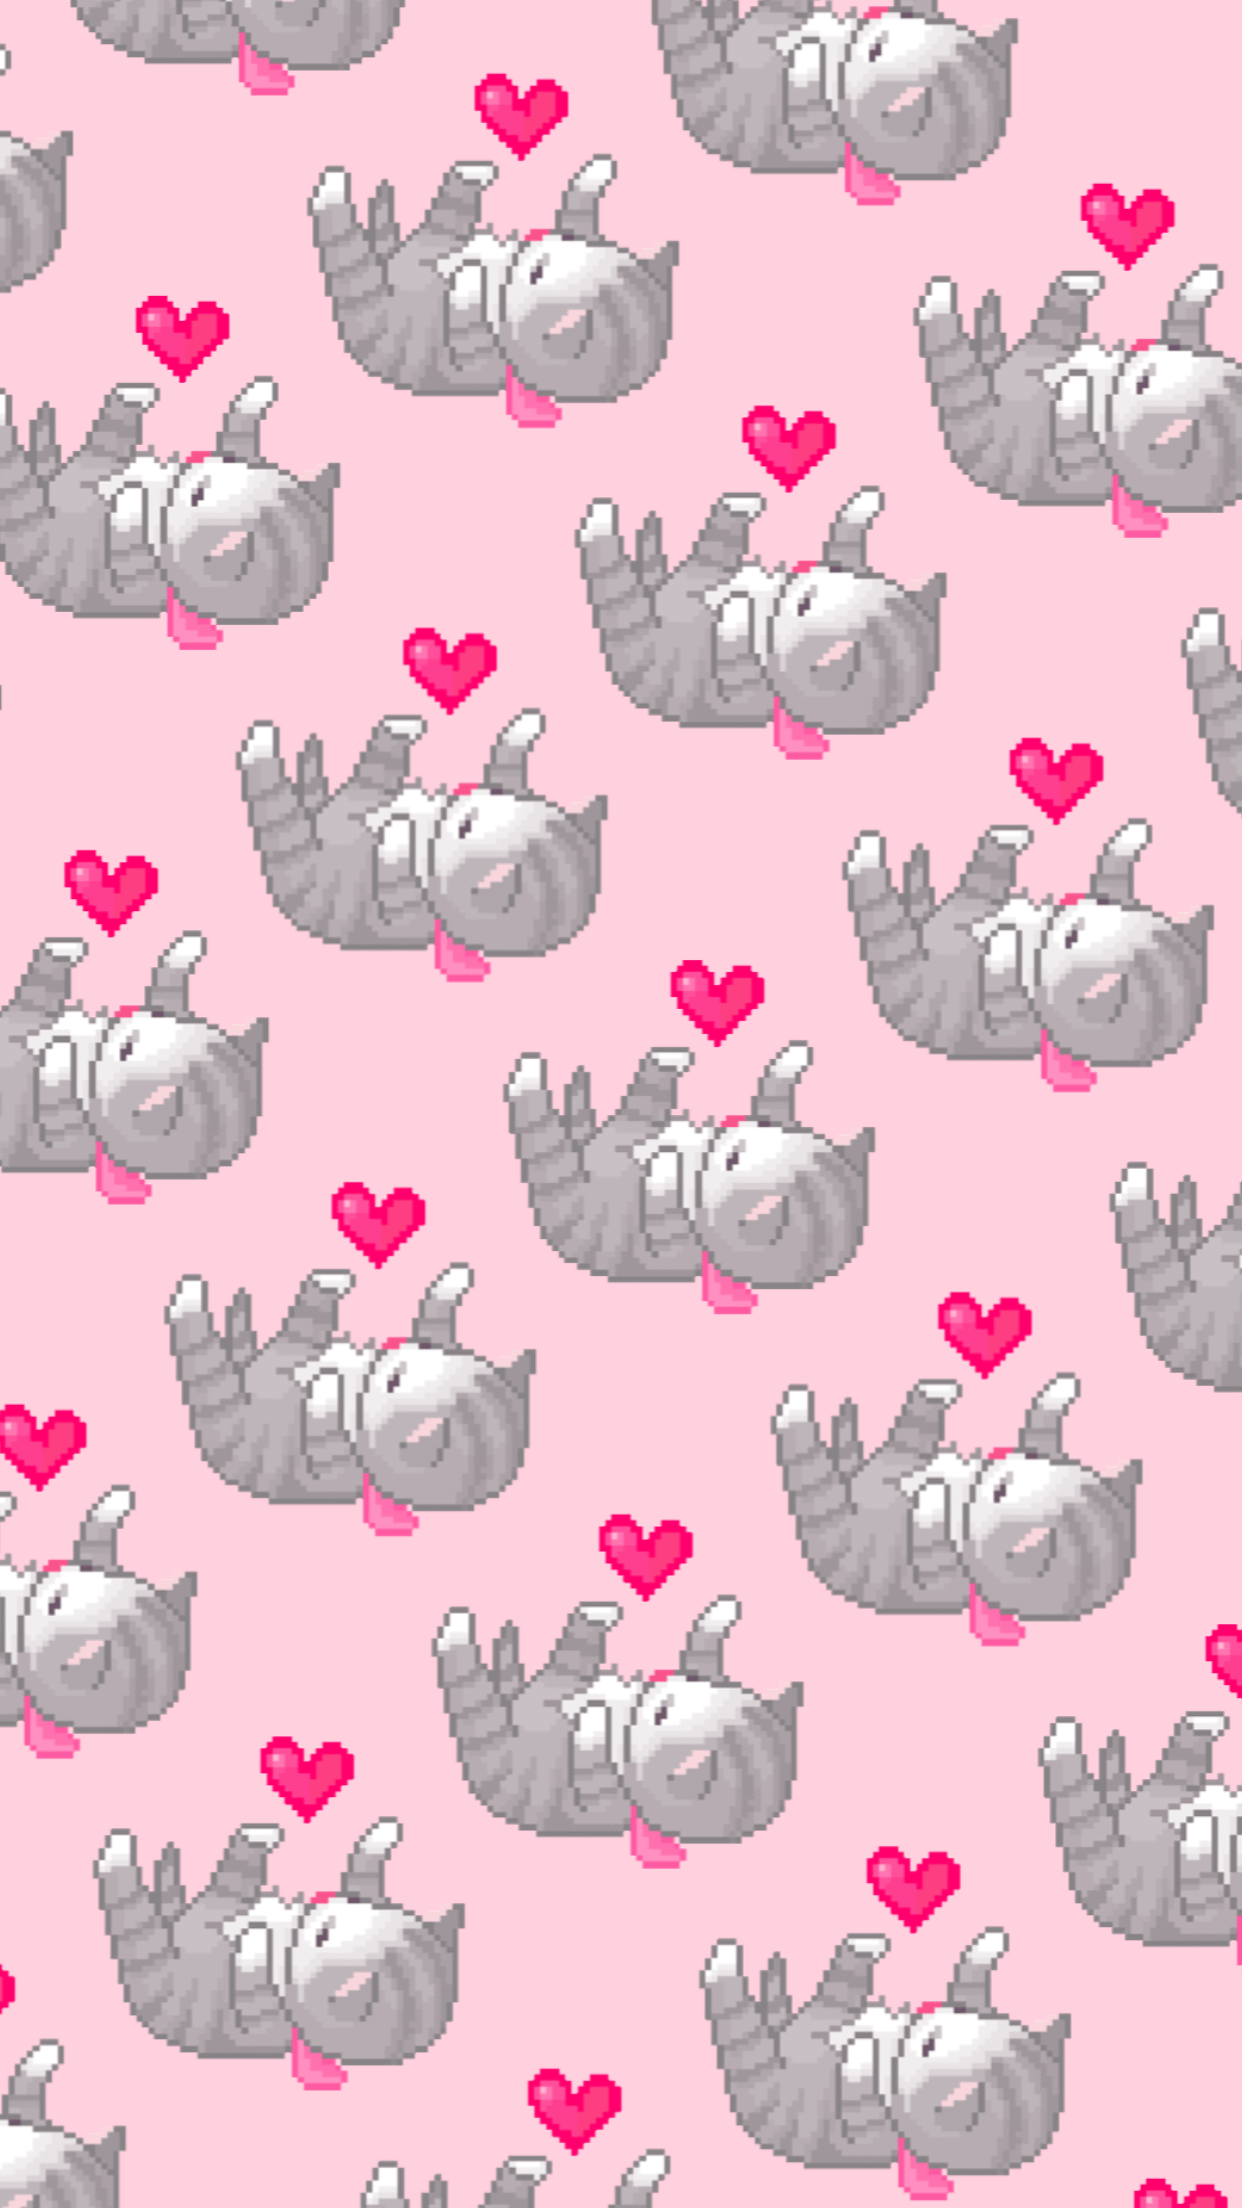 Kitten heart pattern wallpaper. Wallpaper. Kawaii wallpaper